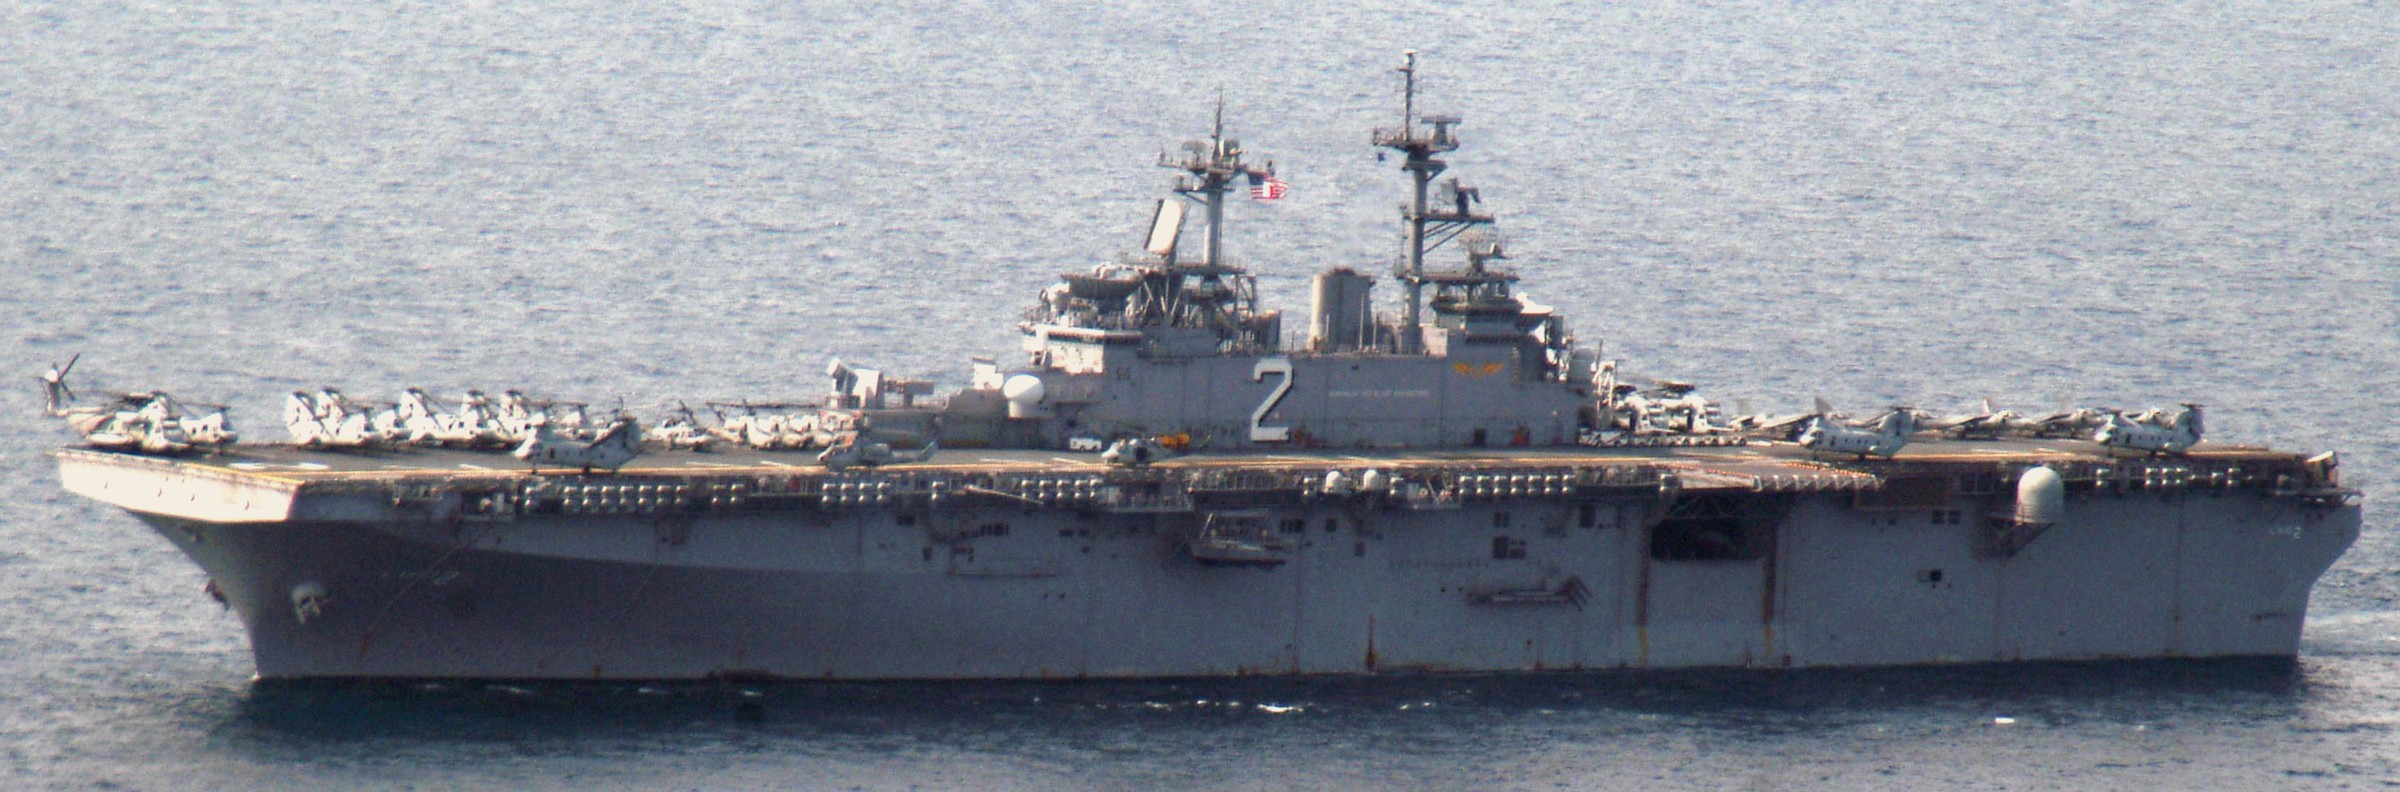 lhd-2 uss essex wasp class amphibious assault ship landing helicopter us navy marines hmm-265 korea 25